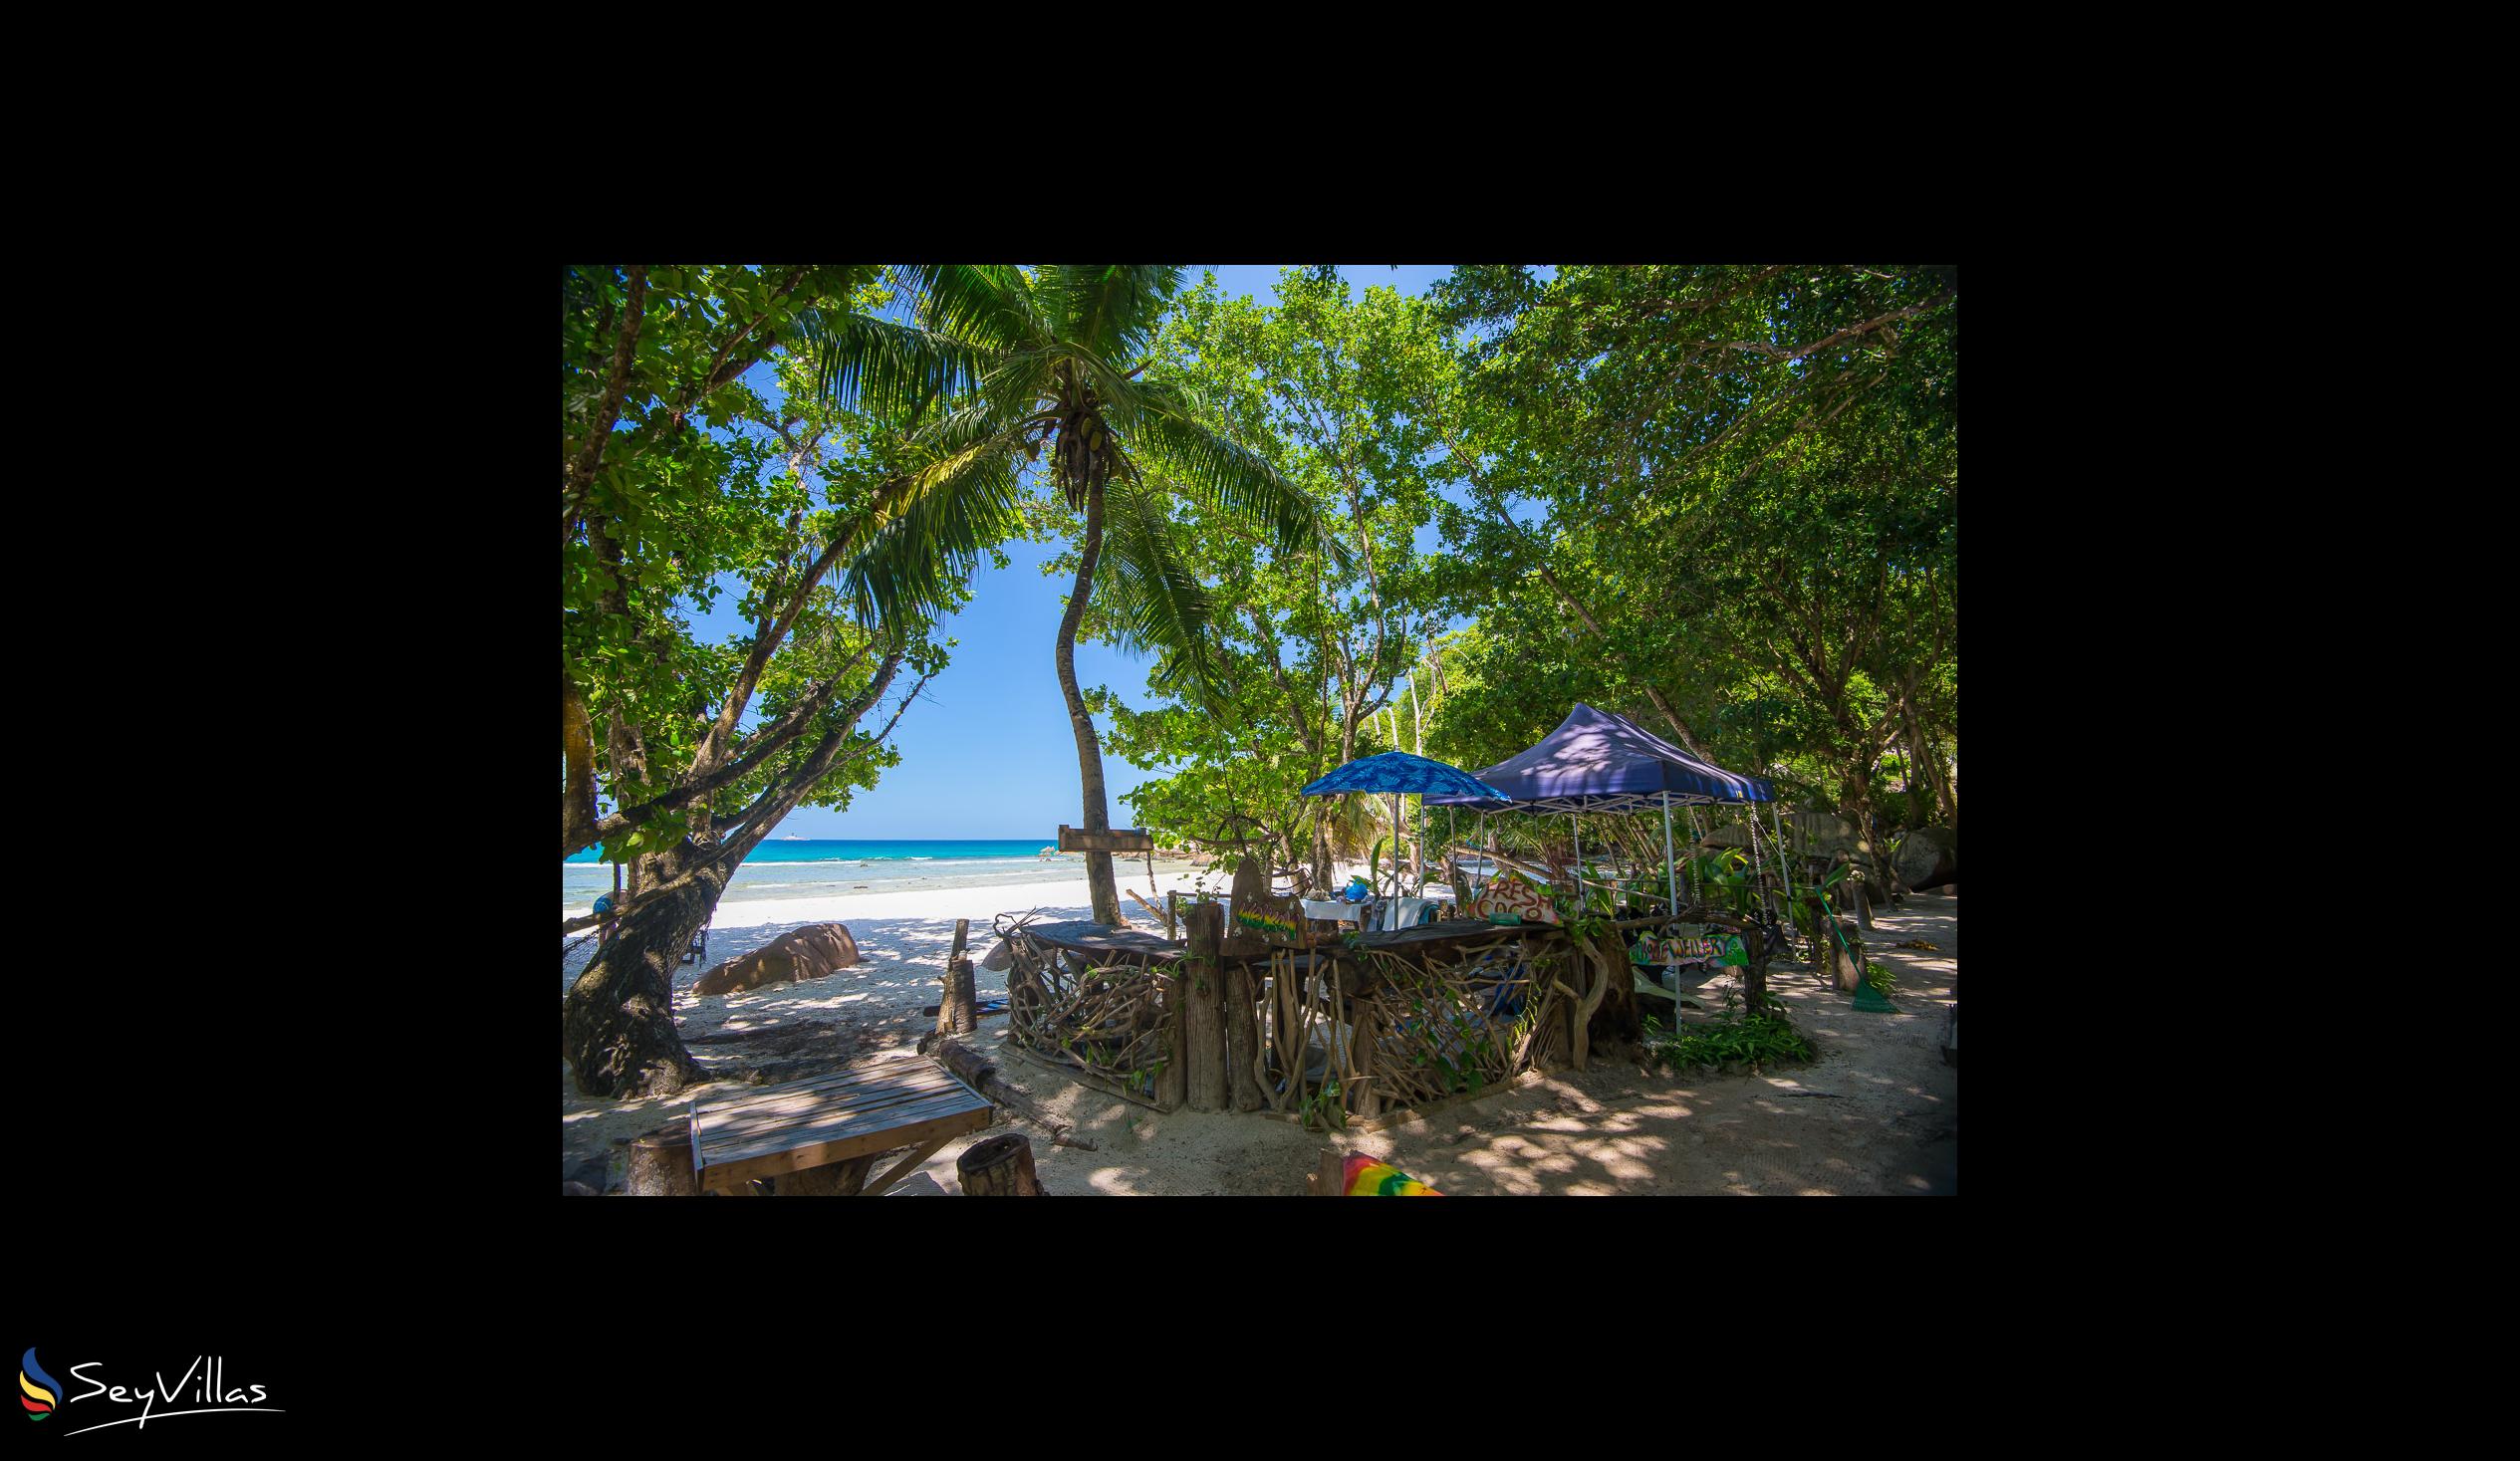 Foto 63: Le Nautique Luxury Waterfront Hotel - Location - La Digue (Seychelles)